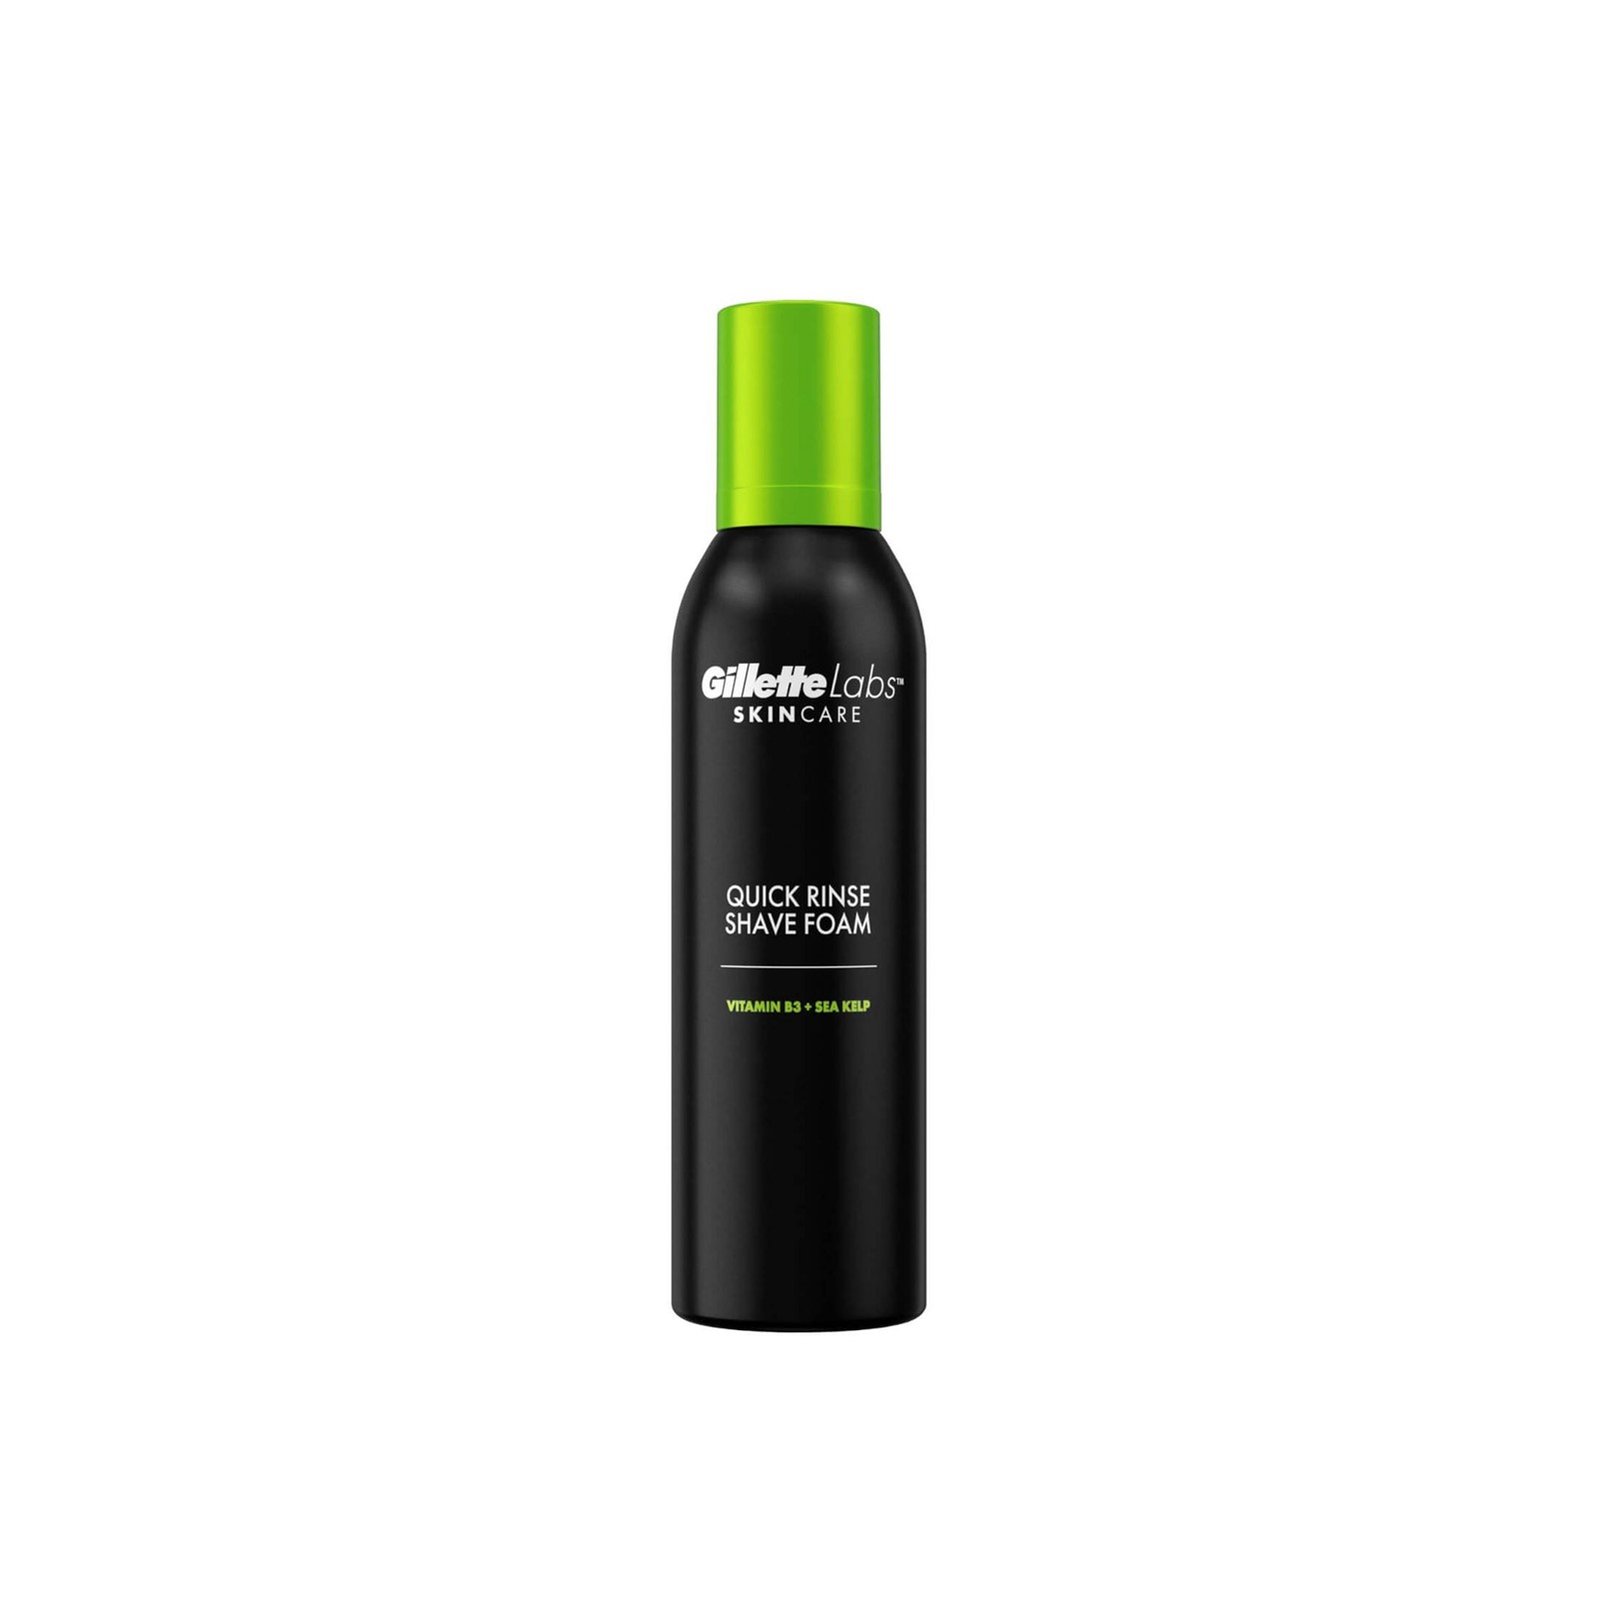 Gillette Labs Skincare Quick Rinse Shave Foam 240ml (8.11 fl oz)